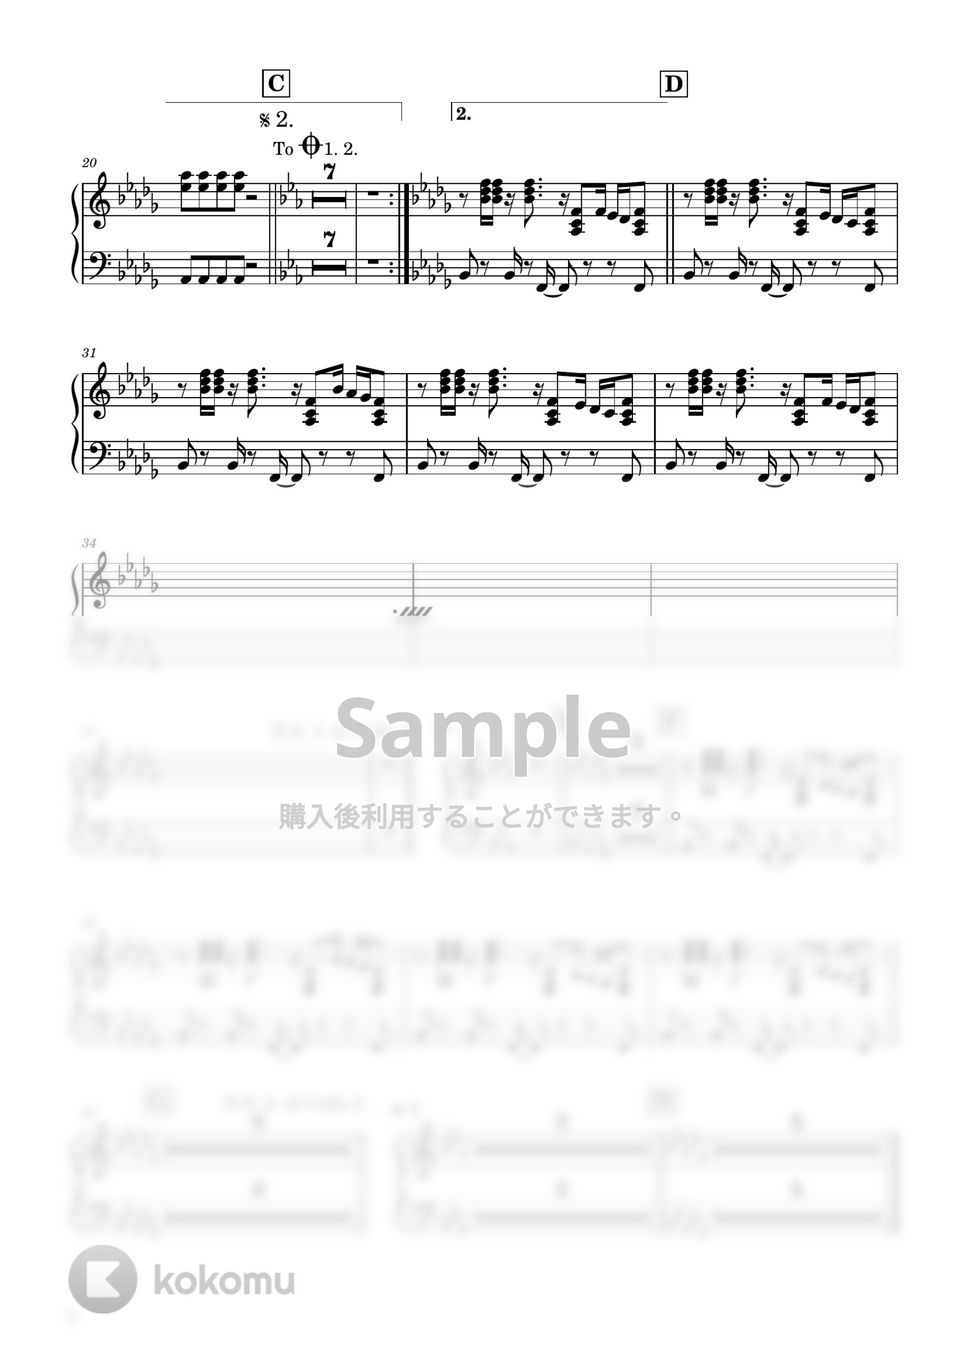 ハチ - 砂の惑星（無料楽譜） (ピアノパート) by Ray